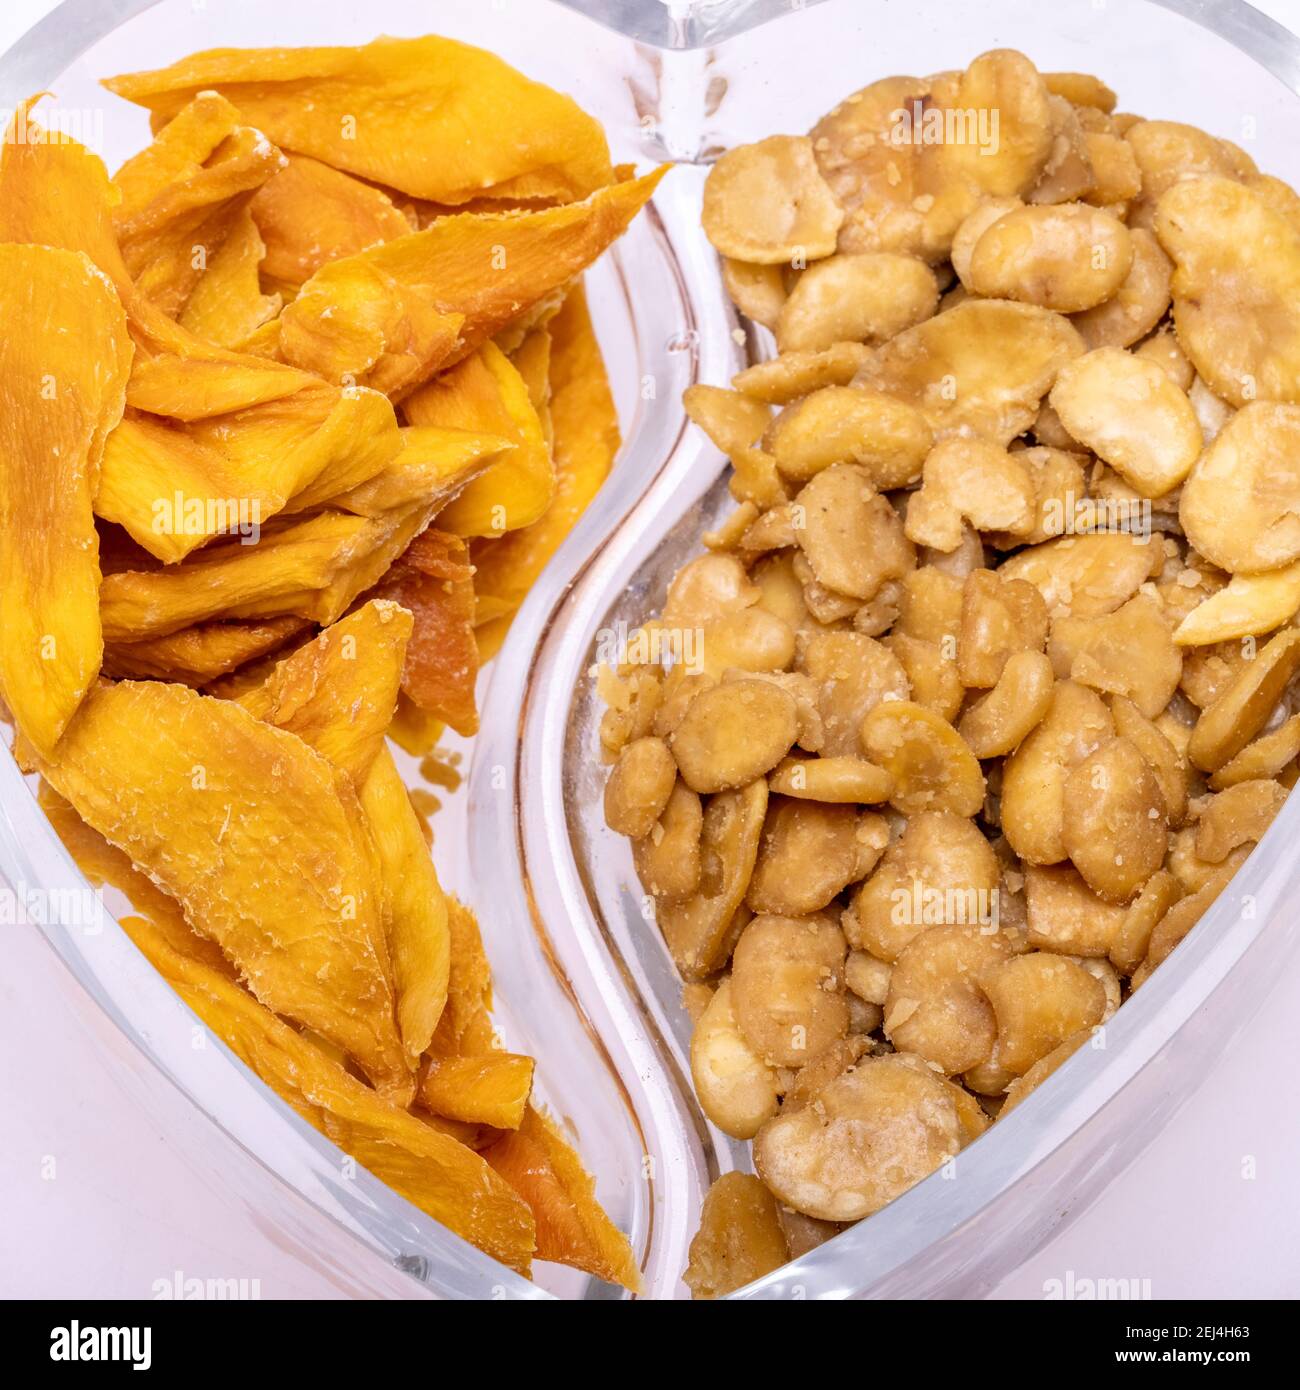 Fèves de fava grillées et salées et tranches de mangue séchées pour une  collation végétalienne et végétarienne saine. Riche en protéines,  vitamines, fibres alimentaires et nutri Photo Stock - Alamy